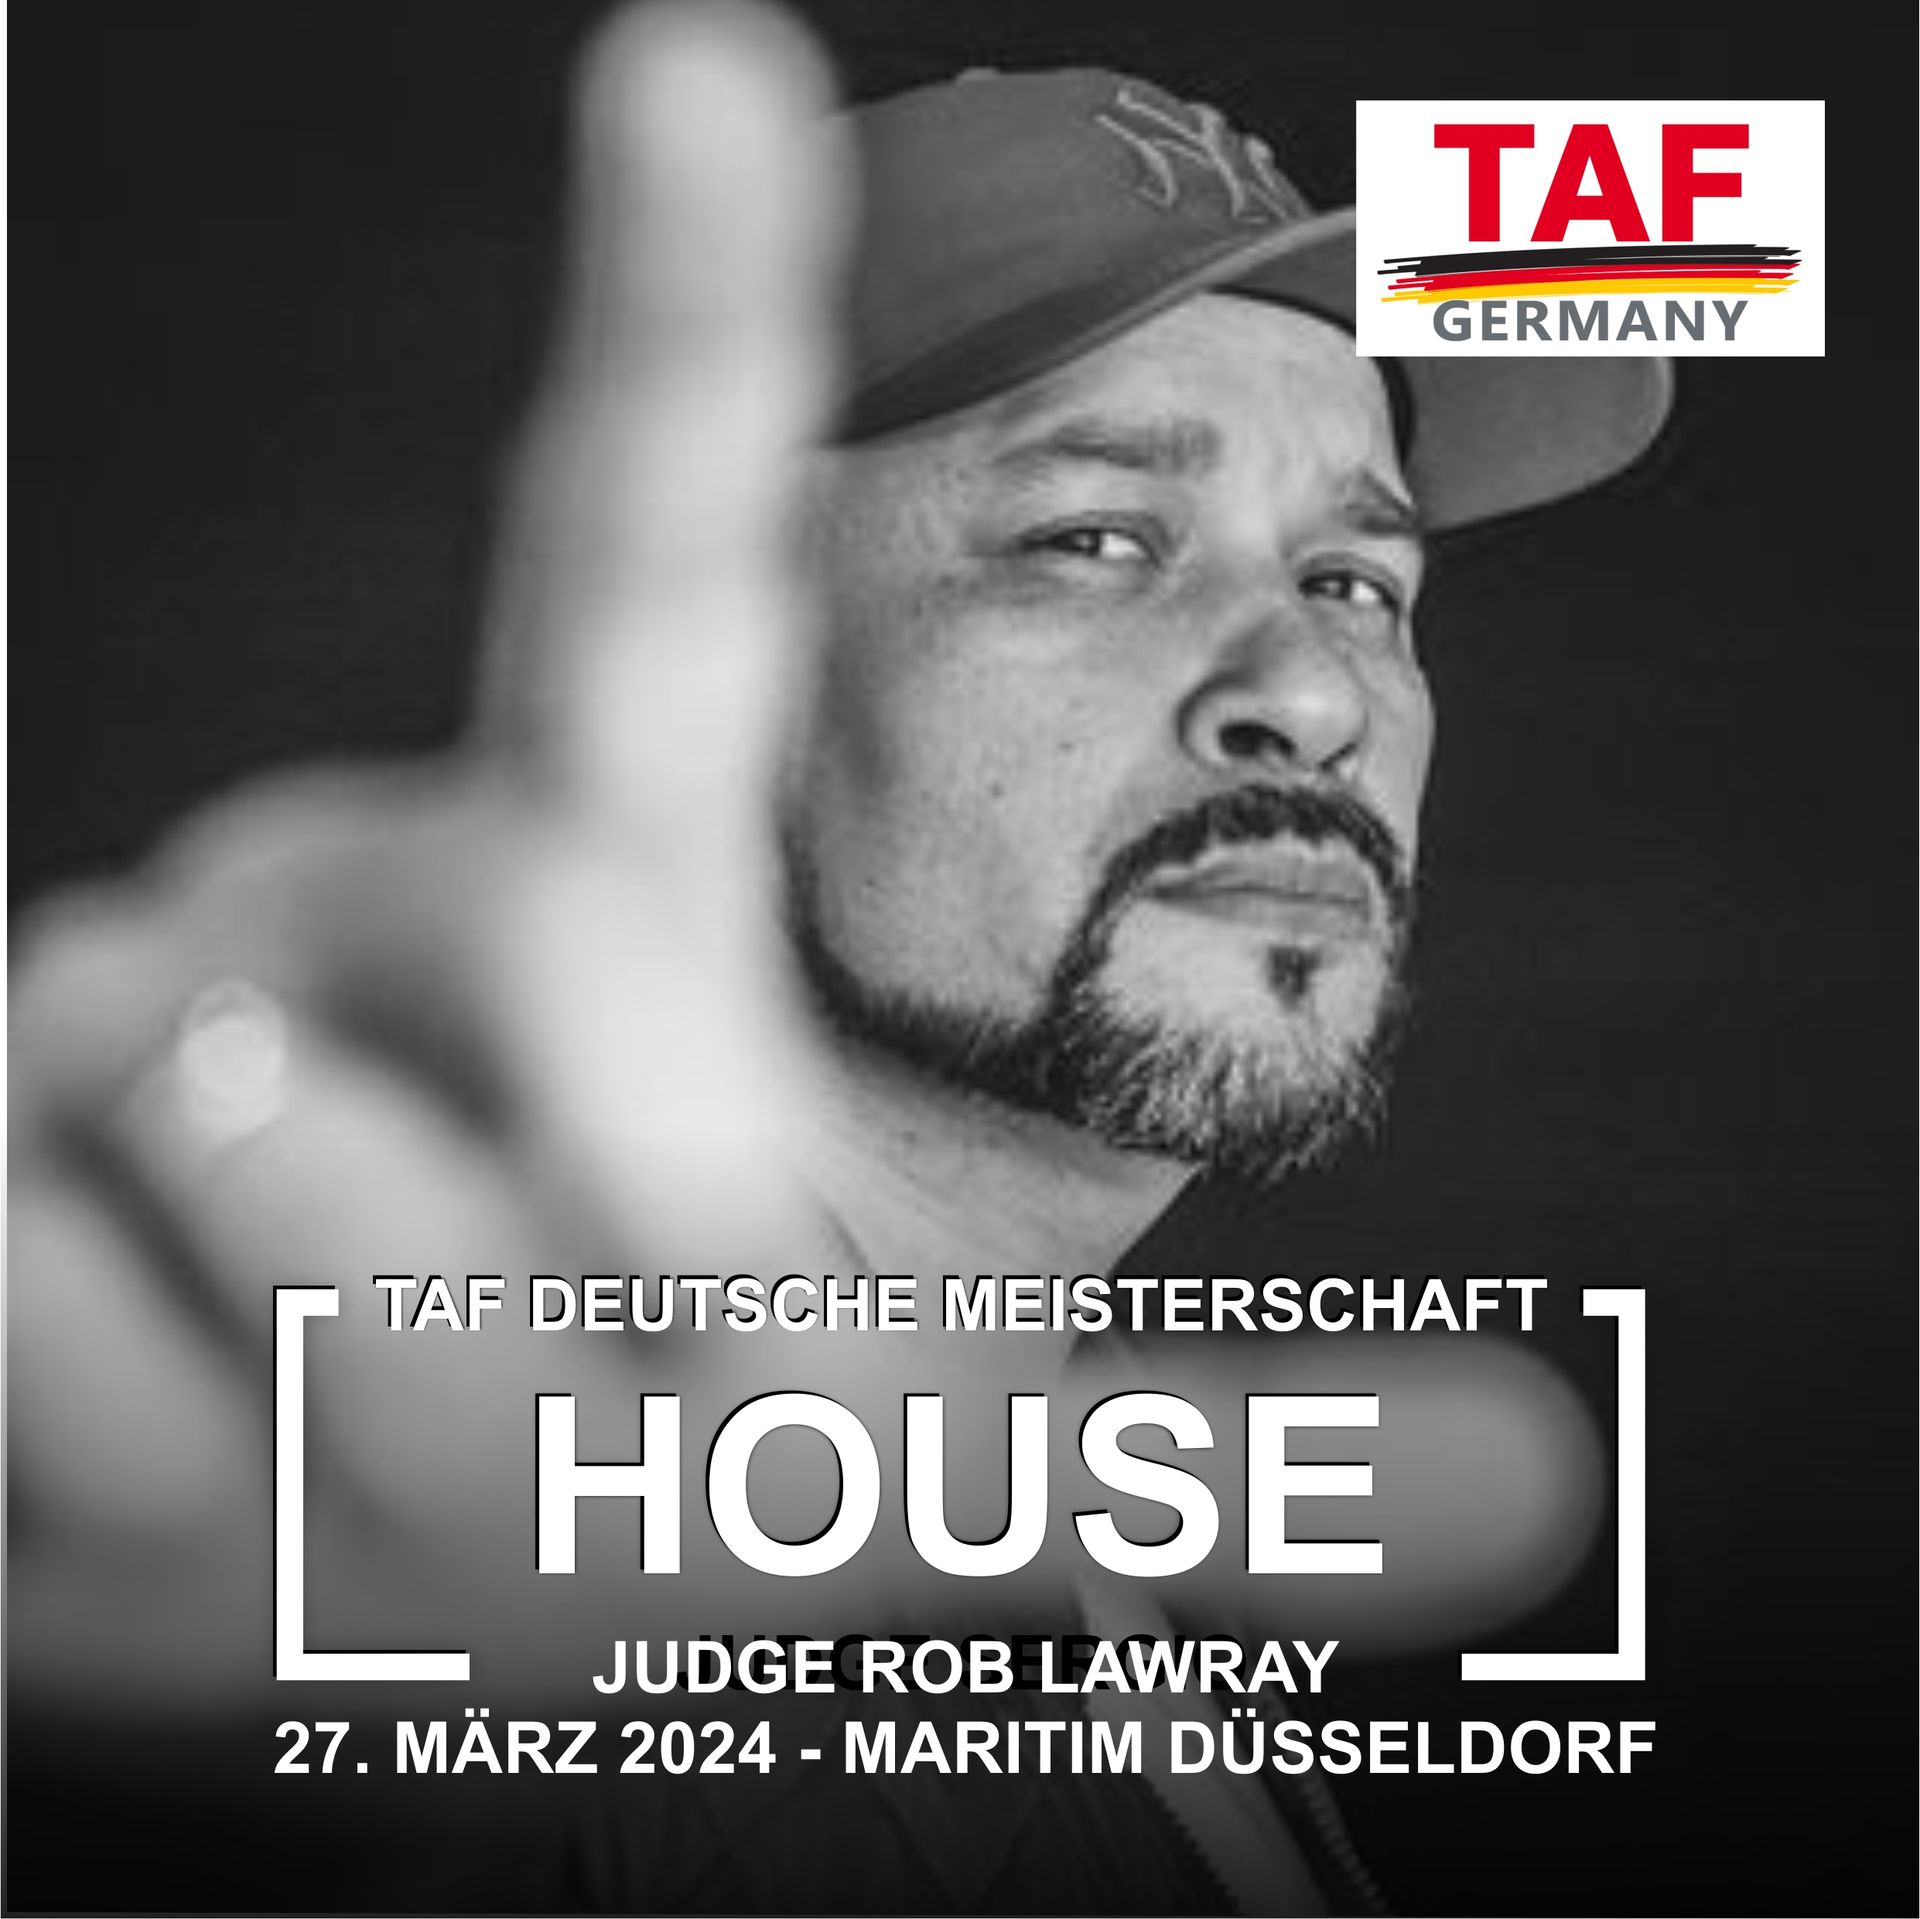 TAF Deutsche Meisterschaft House Battles - Wertugsrichter Rob Lawray